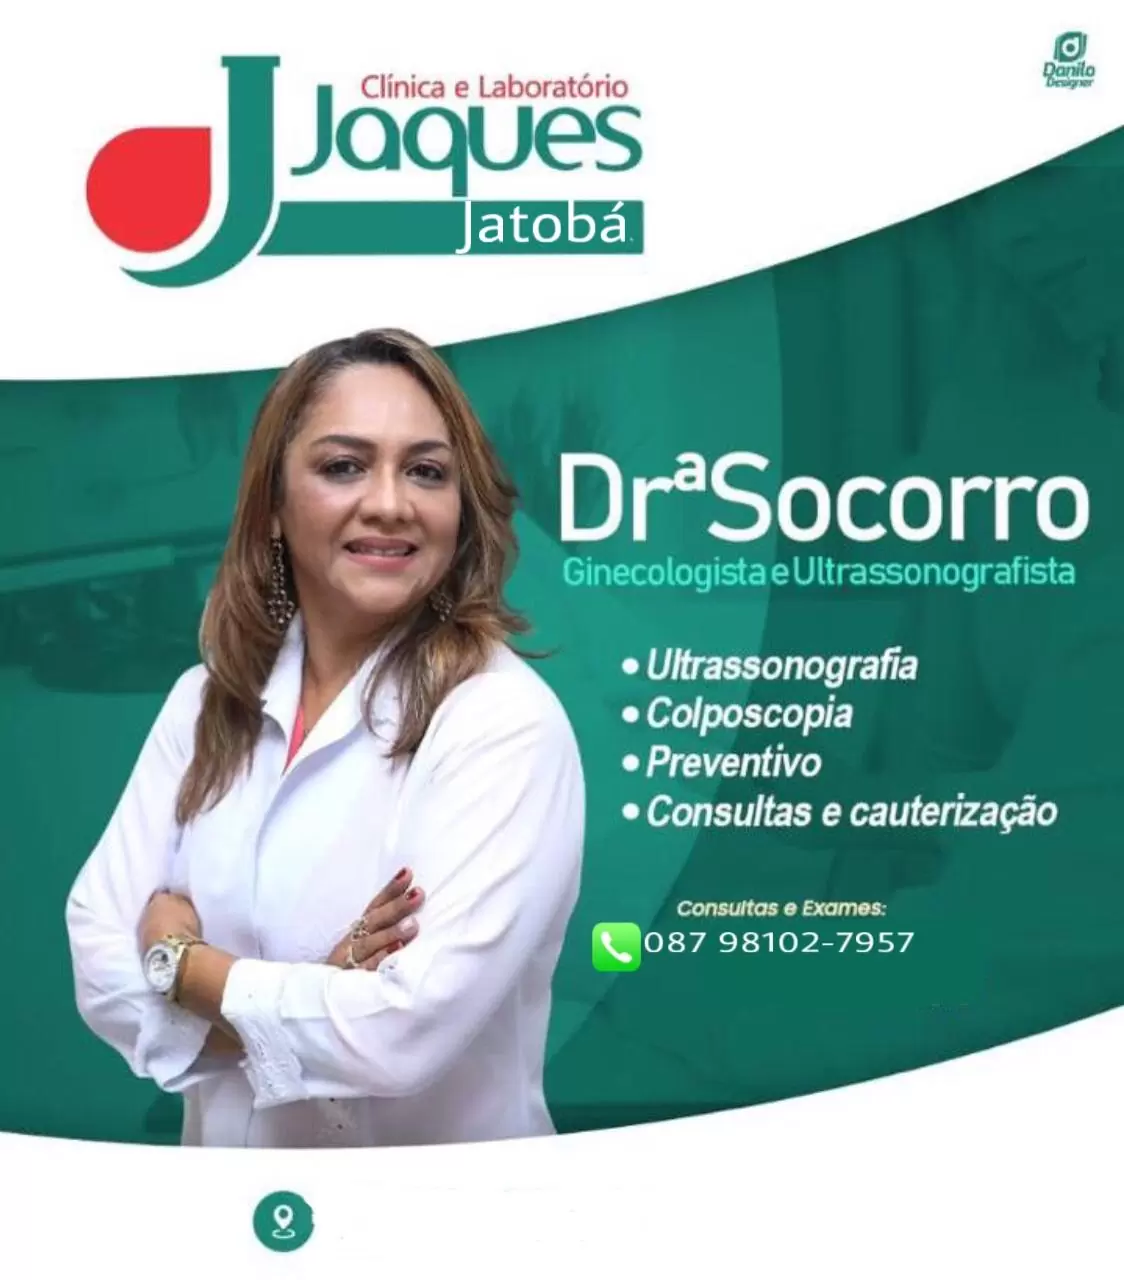 Jatobá: Drª Socorro Realizará Consultas Em Ginecologia E Ultrassonografia Quinta-Feira (19/11) Na Clínica E Laboratório Jaques